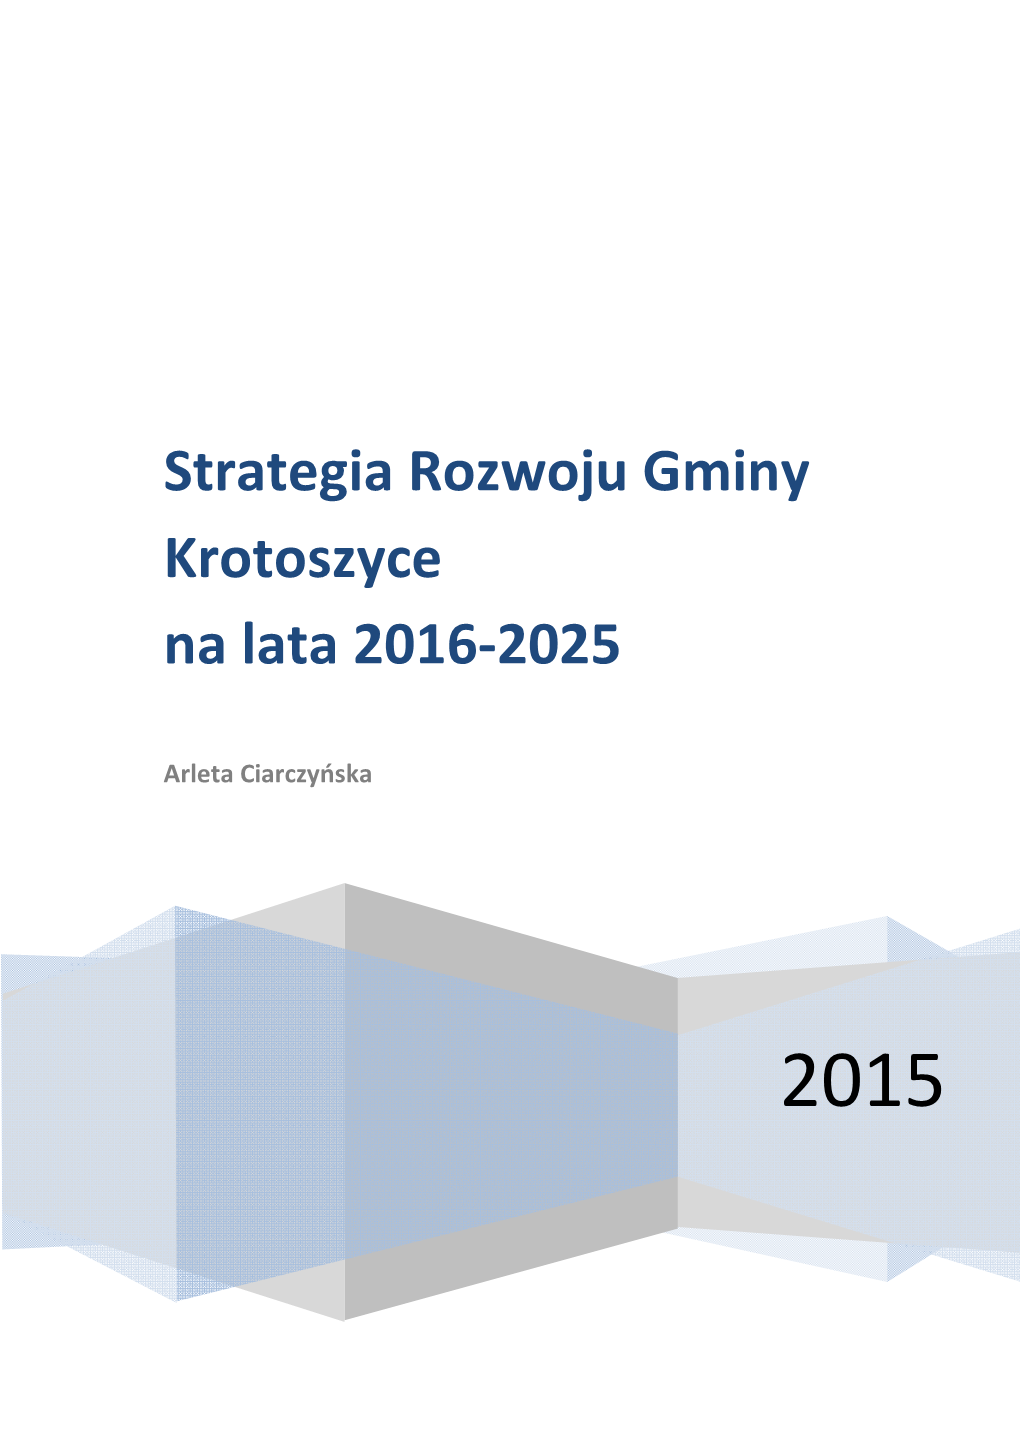 Strategia Rozwoju Gminy Krotoszyce Na Lata 2016-2025